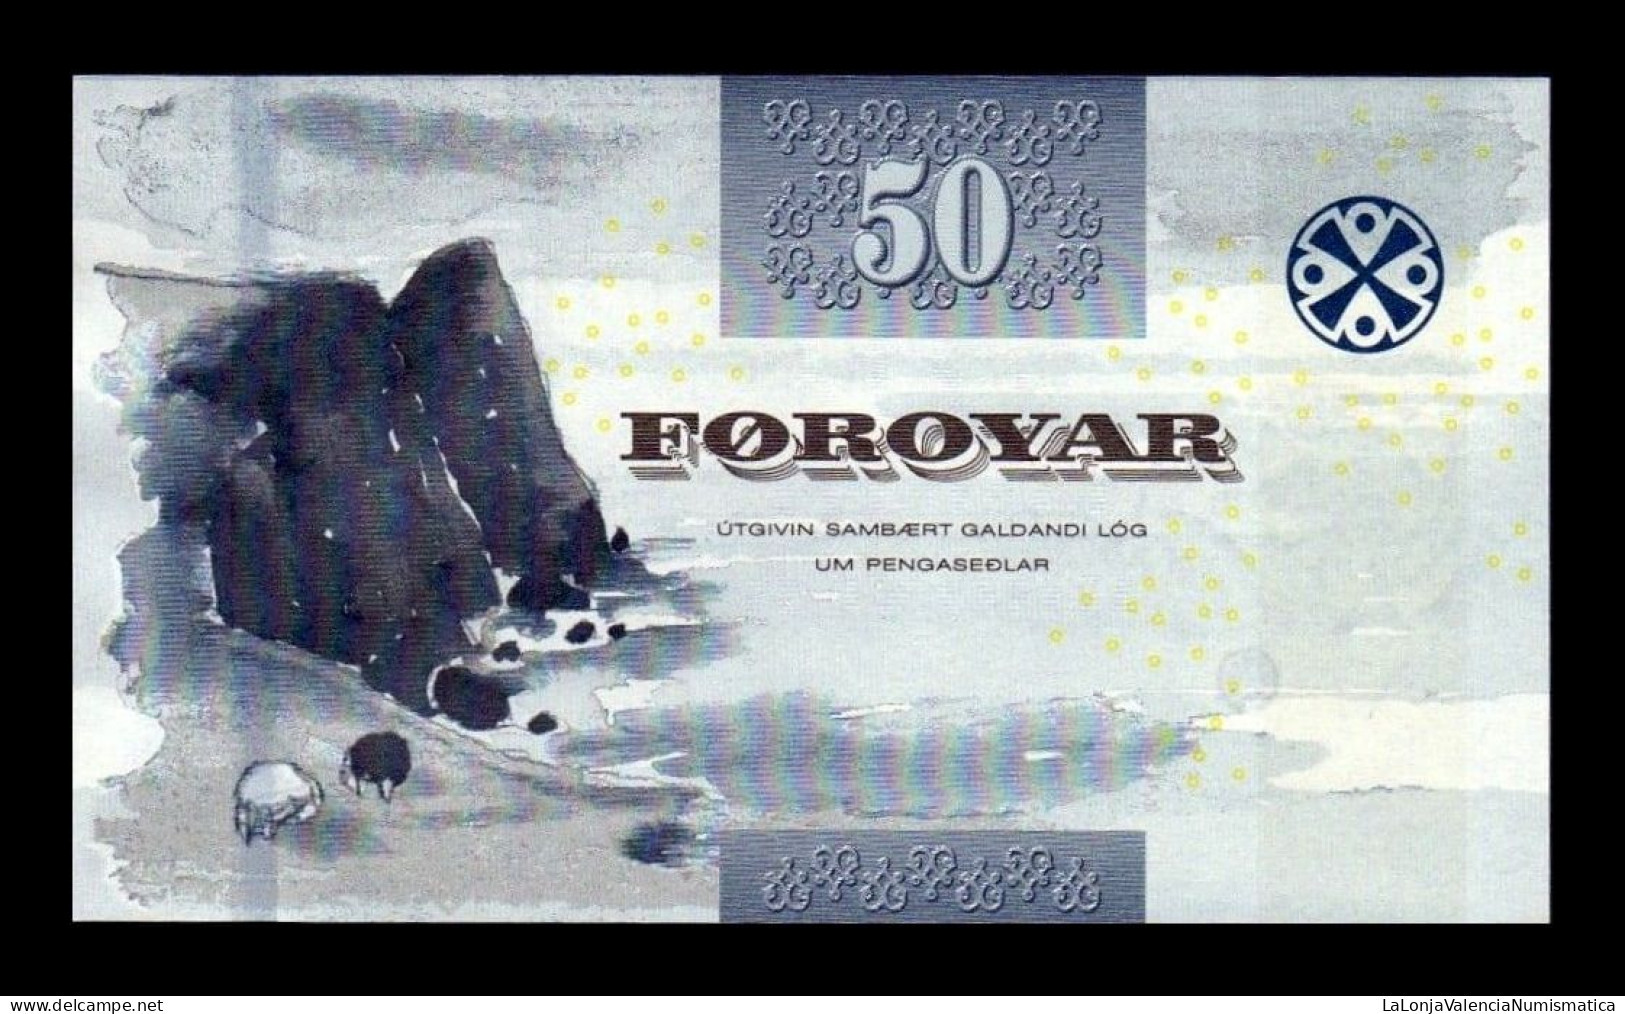 Islas Feroe Faeroe Islands 50 Kronur 2011 Pick 29 Sc Unc - Faroe Islands